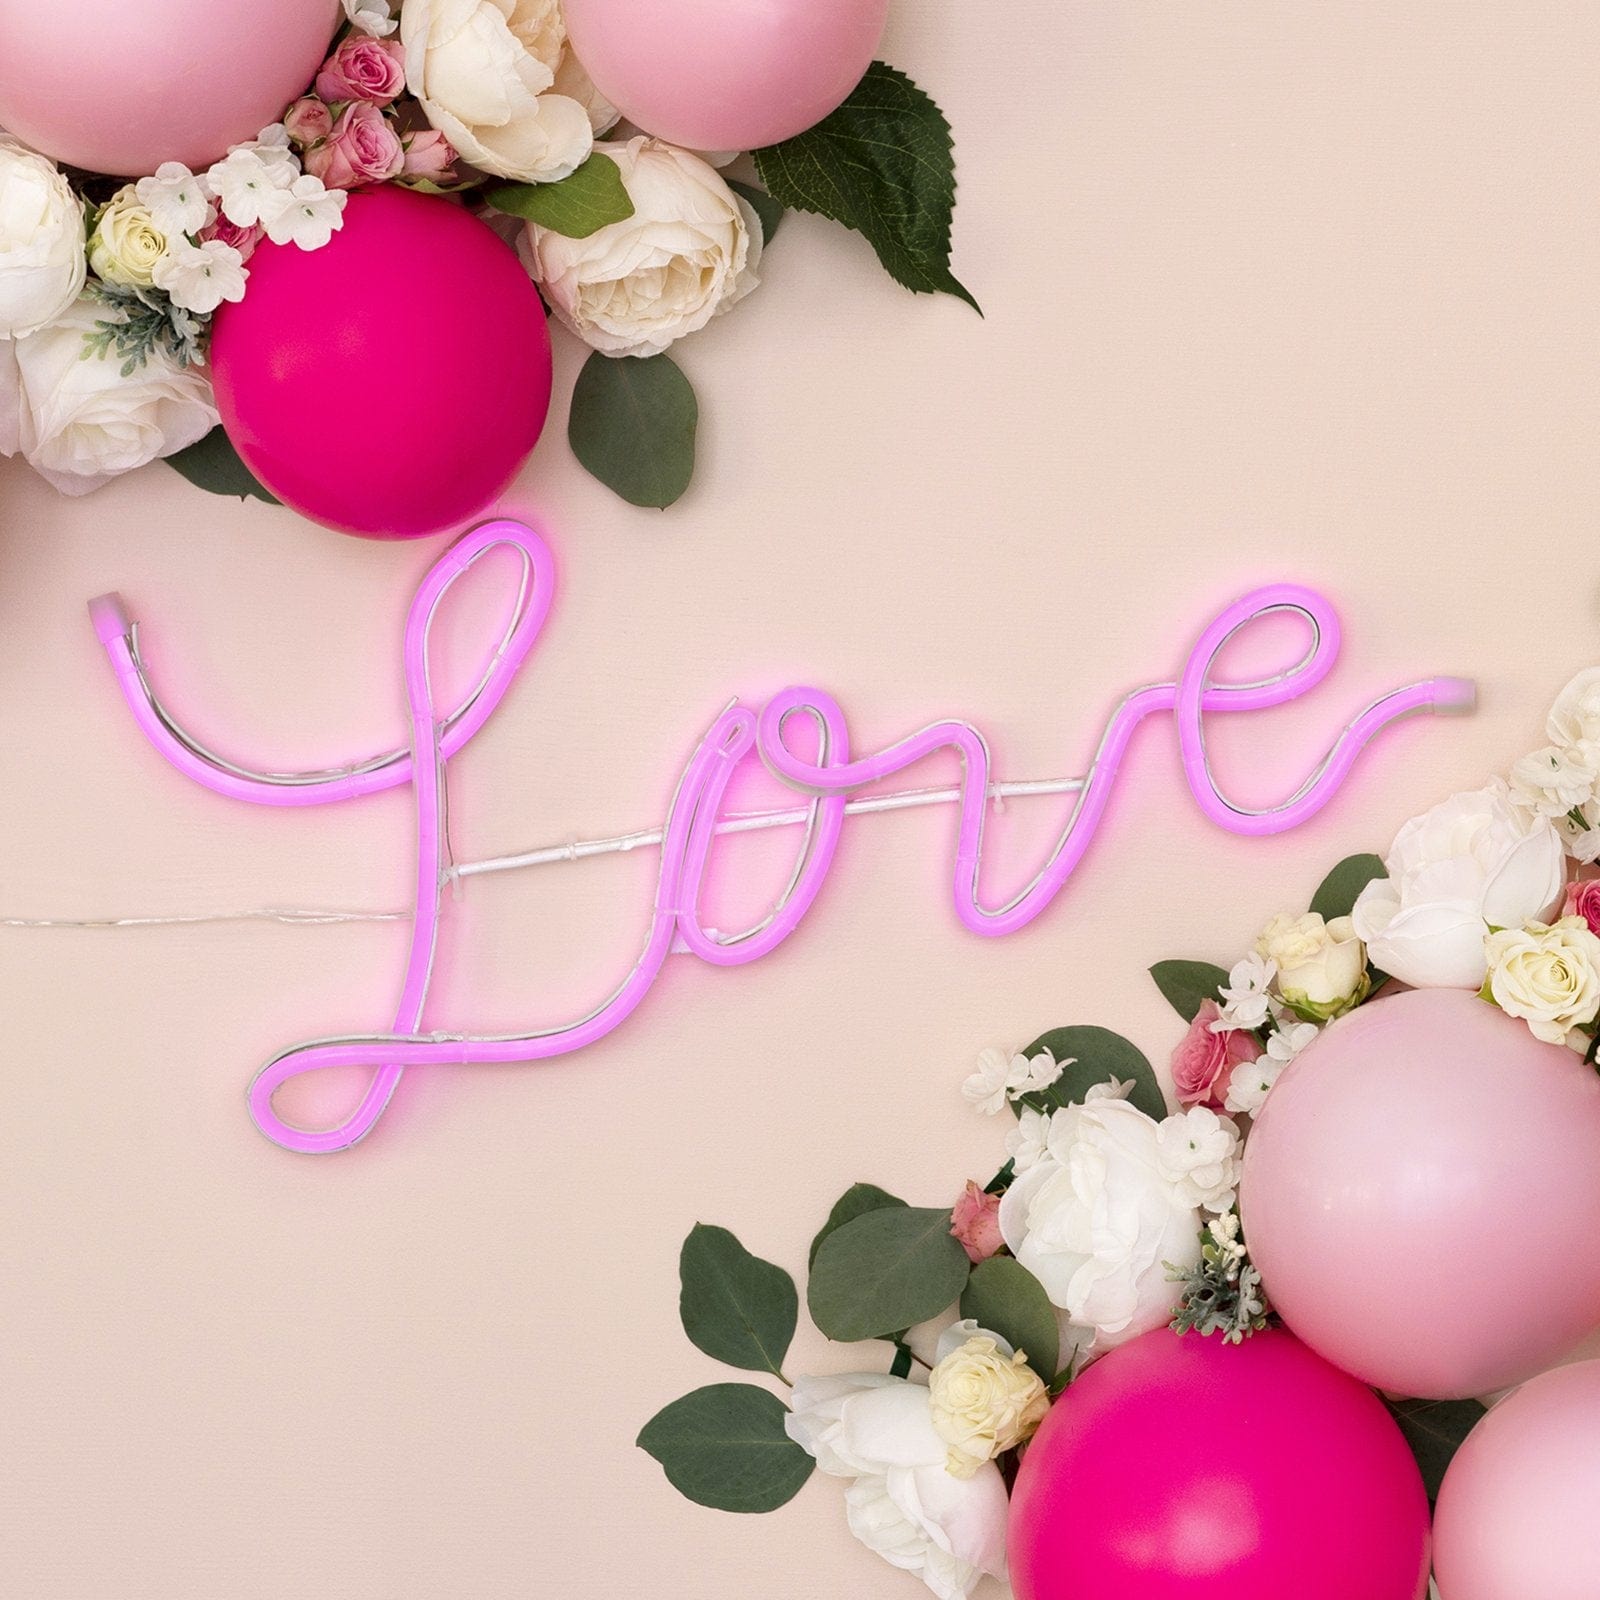 Neon Pink 'Love' Sign Gartner Studios Neon Sign 34954